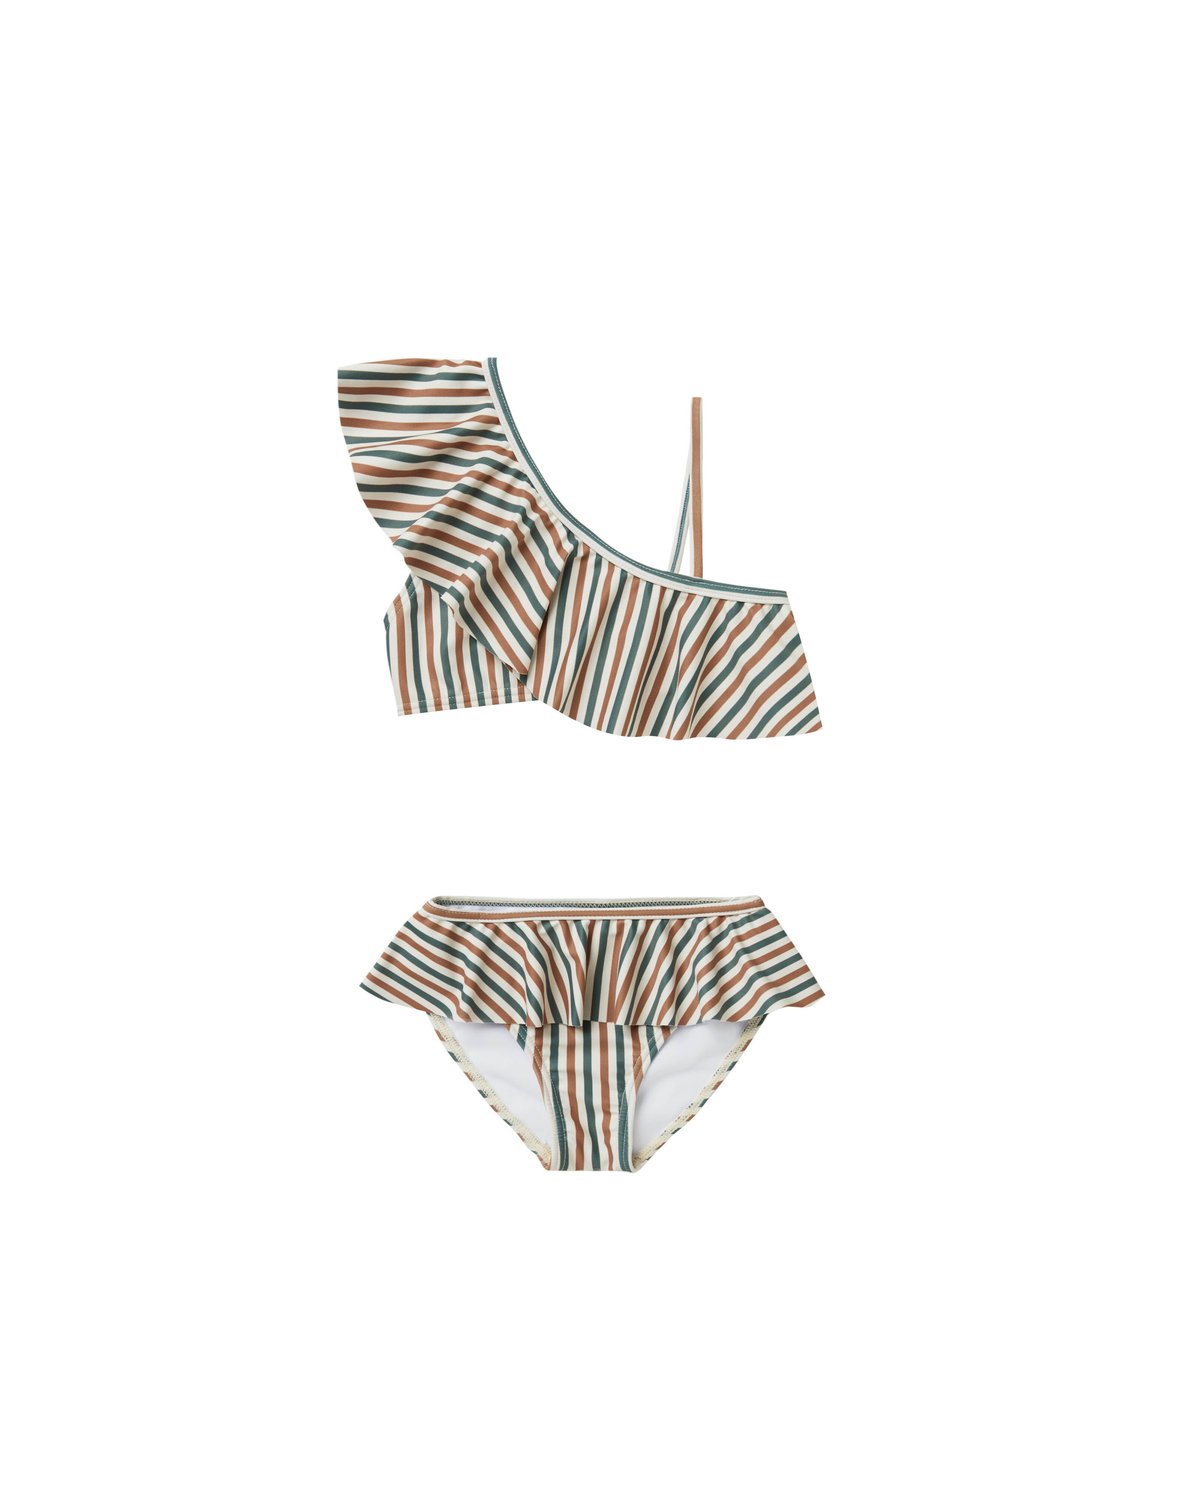 Rylee+cru【即納】Skirted bikini (nautical stripe)《送料無料・セット割対象・水着クーポン対象》